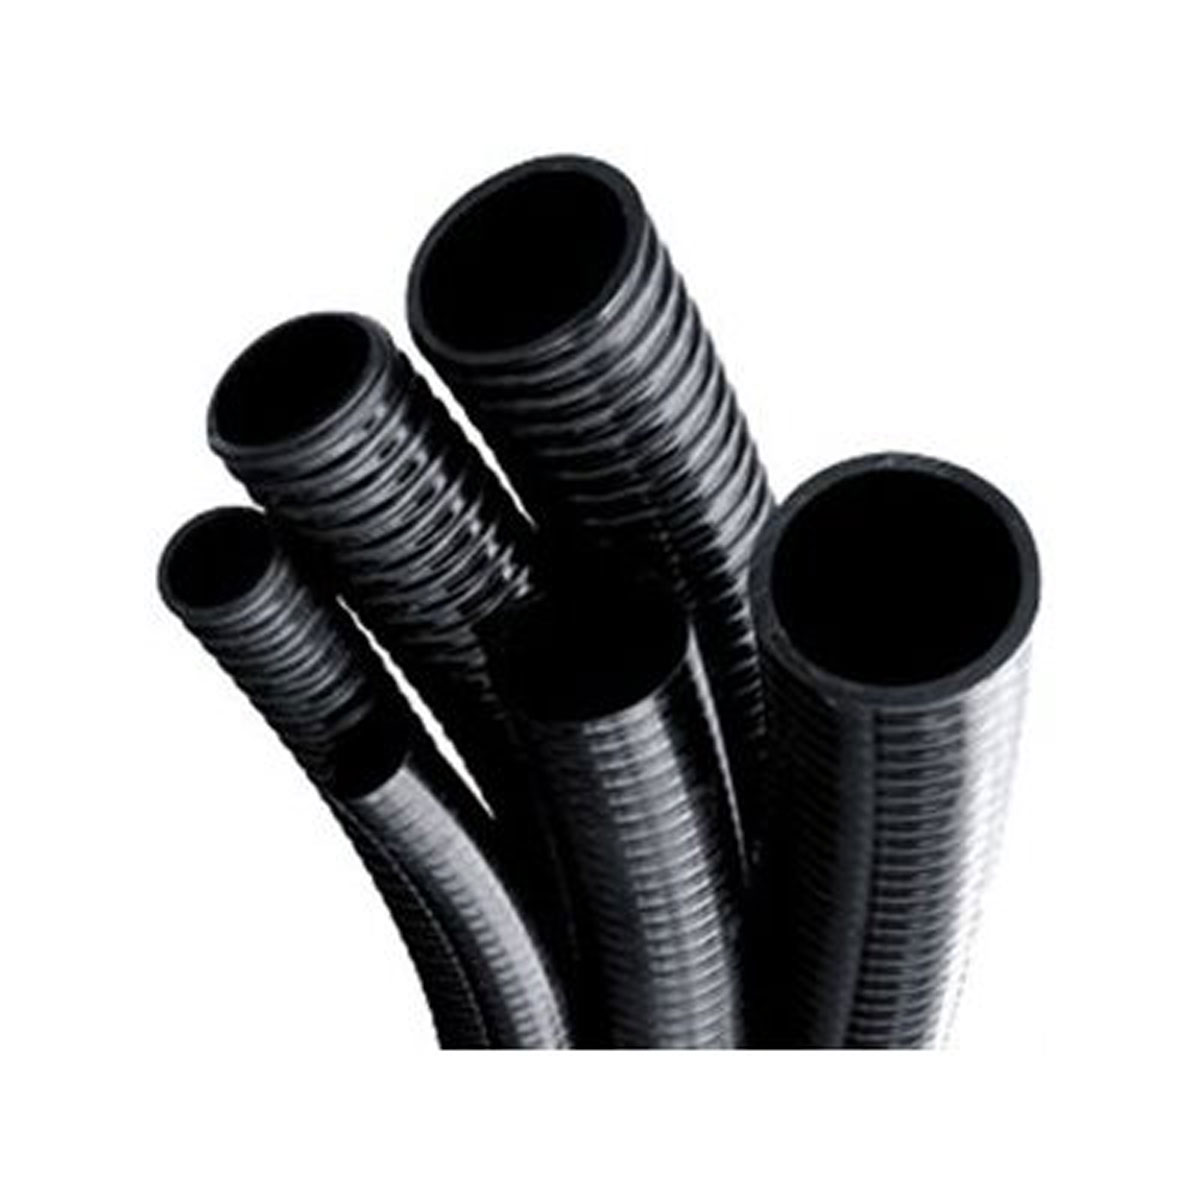 2" Black PVC Flexible Pipe